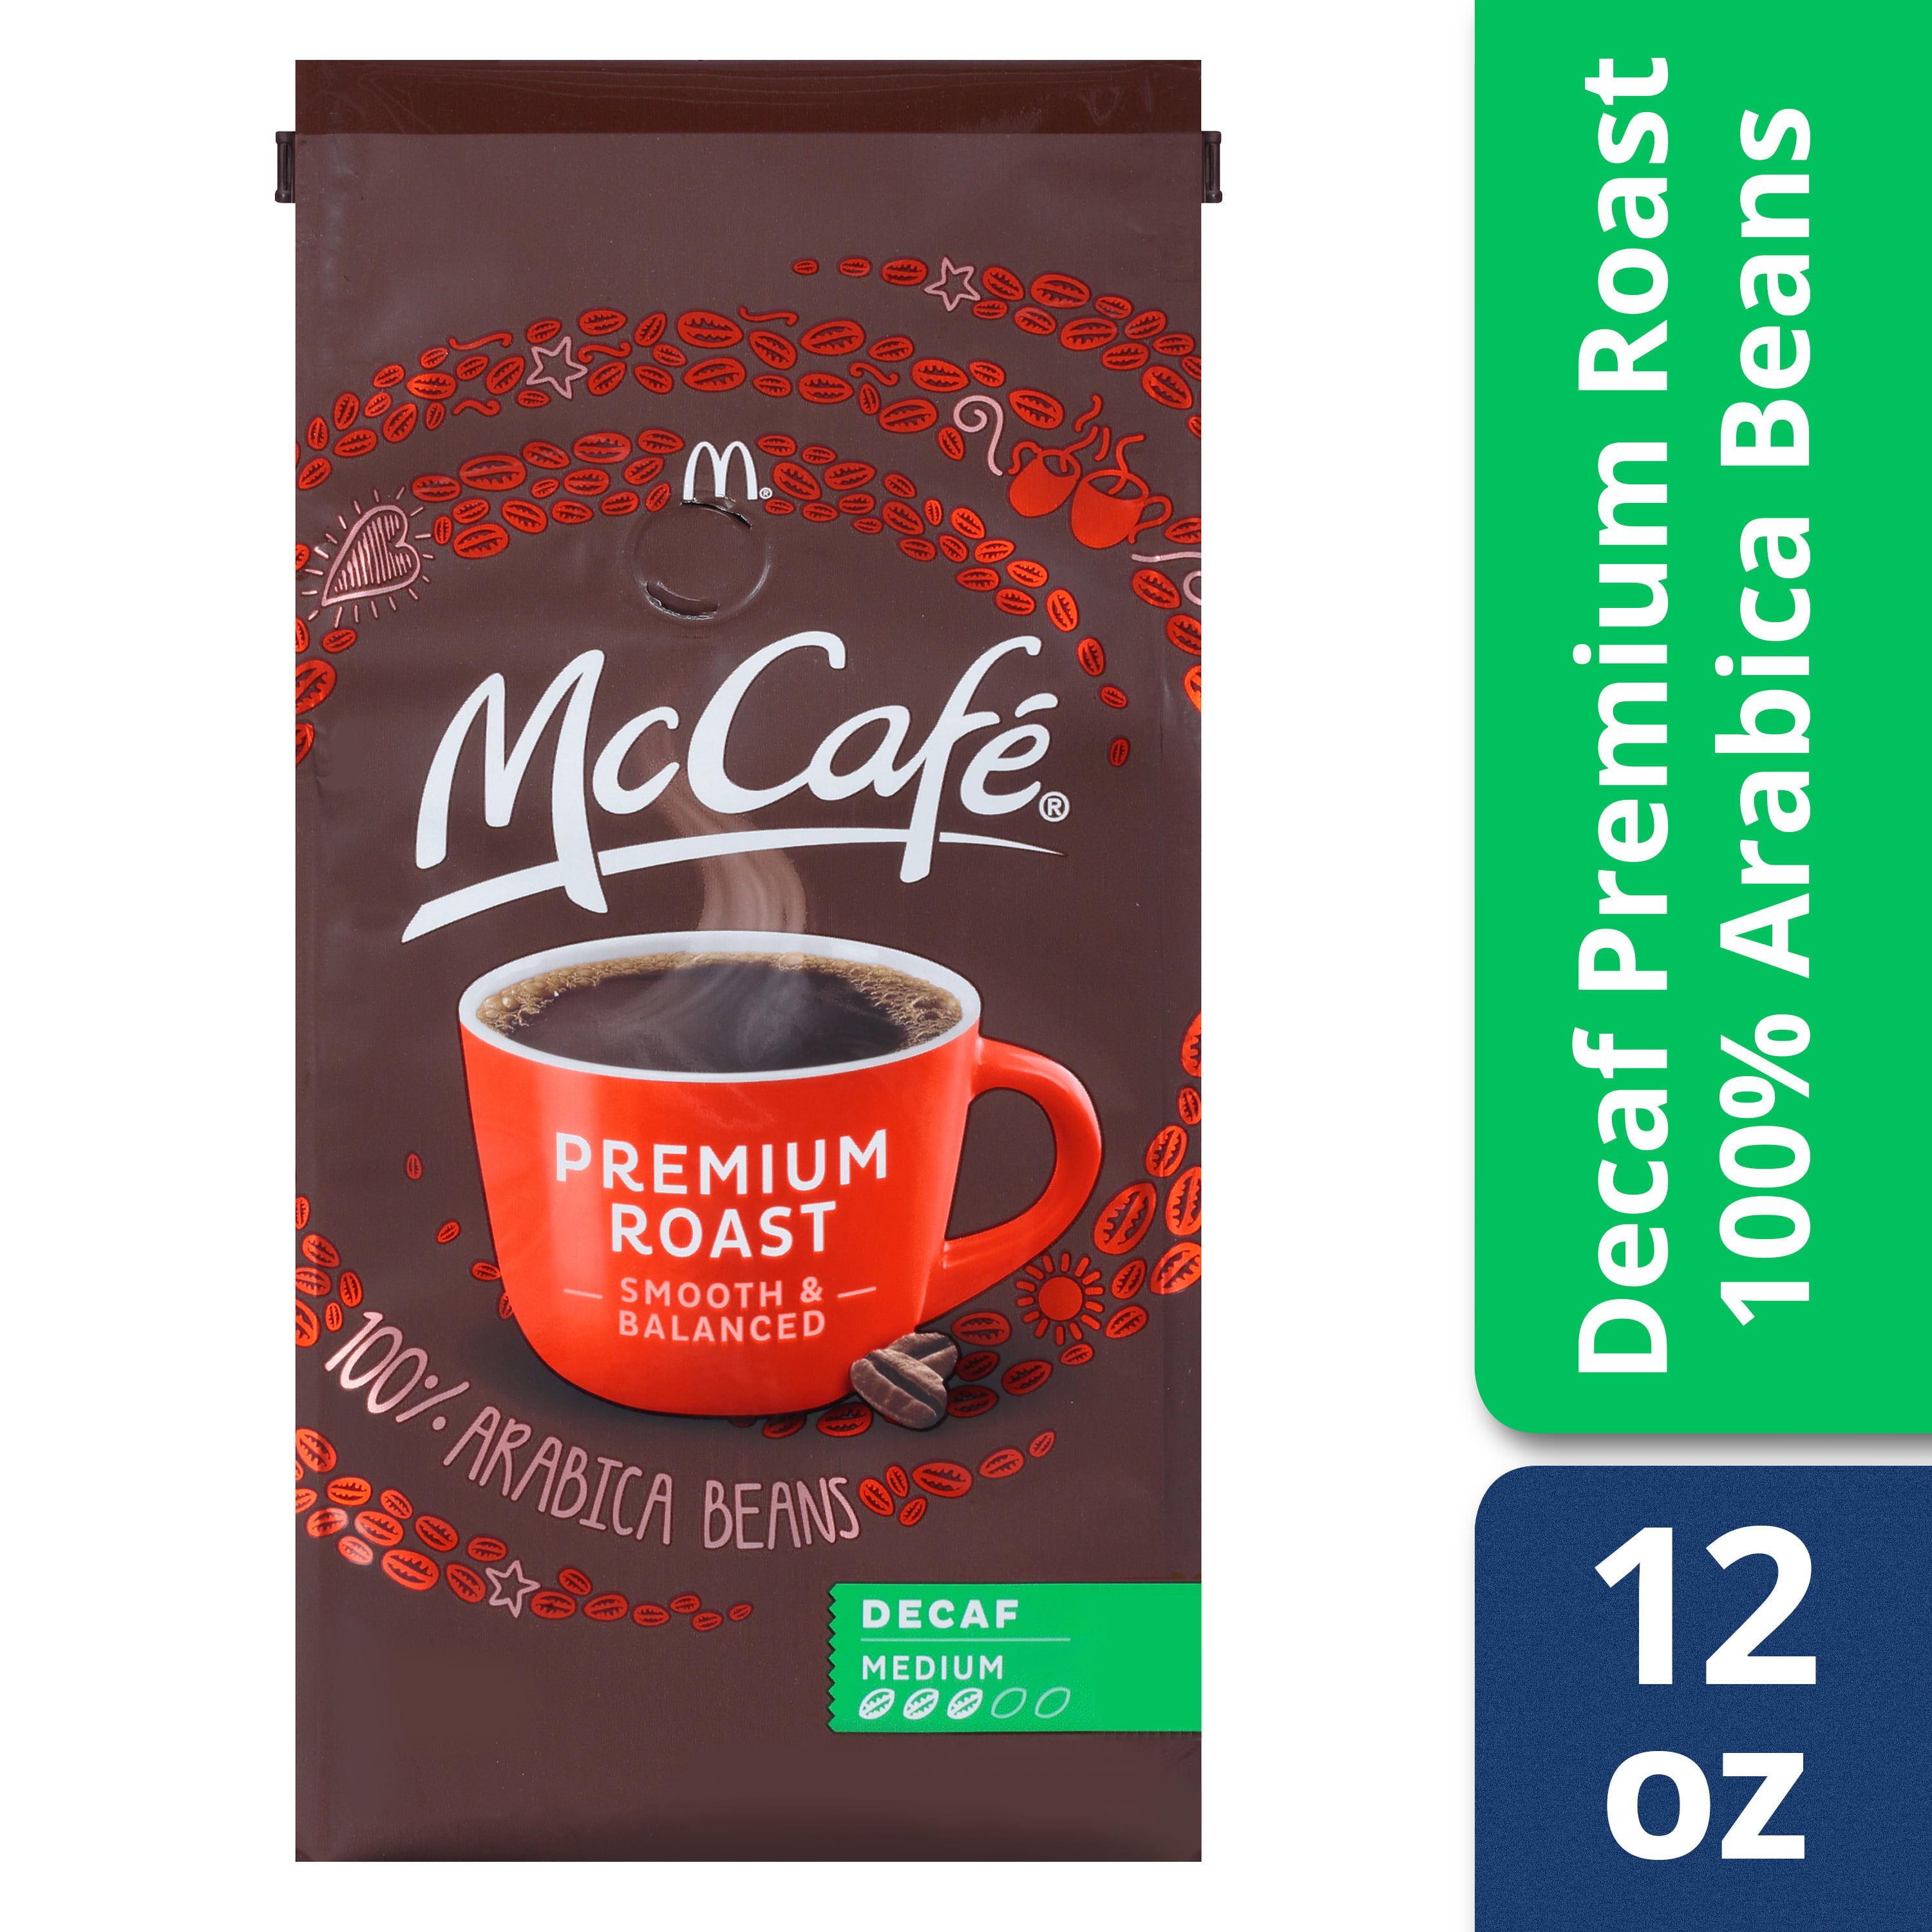 McCafe Premium Roast Decaf Ground Coffee, Medium Roast, 12